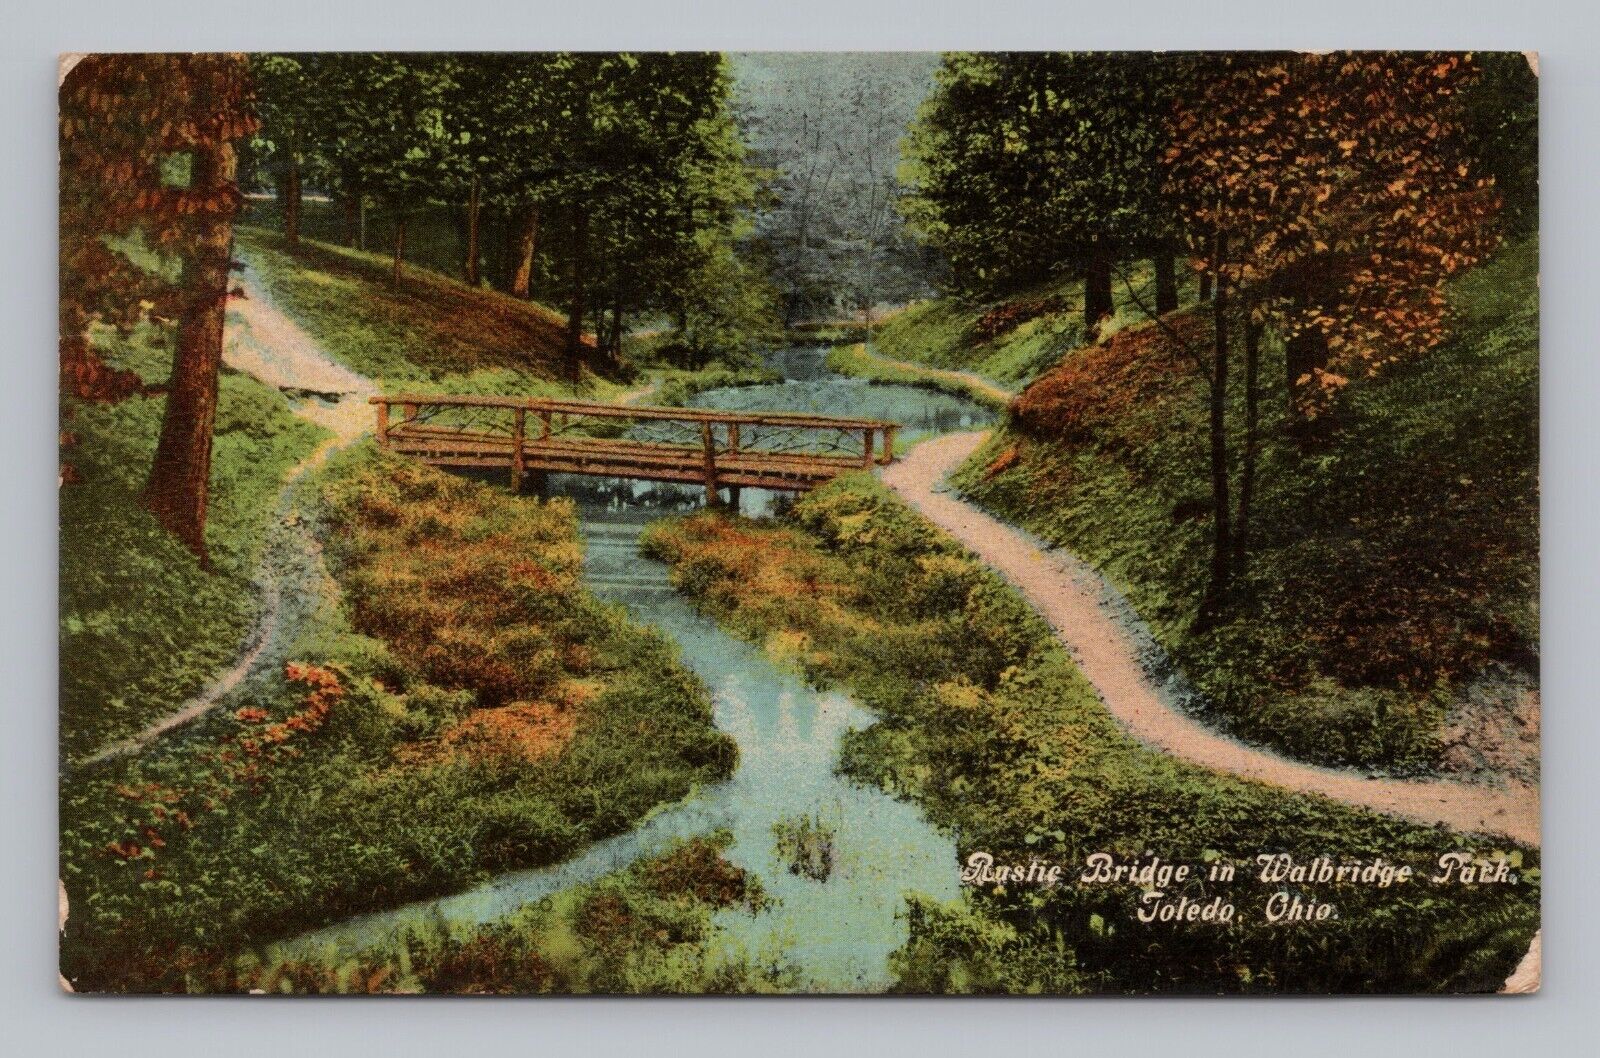 Postcard Rustic Bridge in Walbridge Park Toledo Ohio c1912